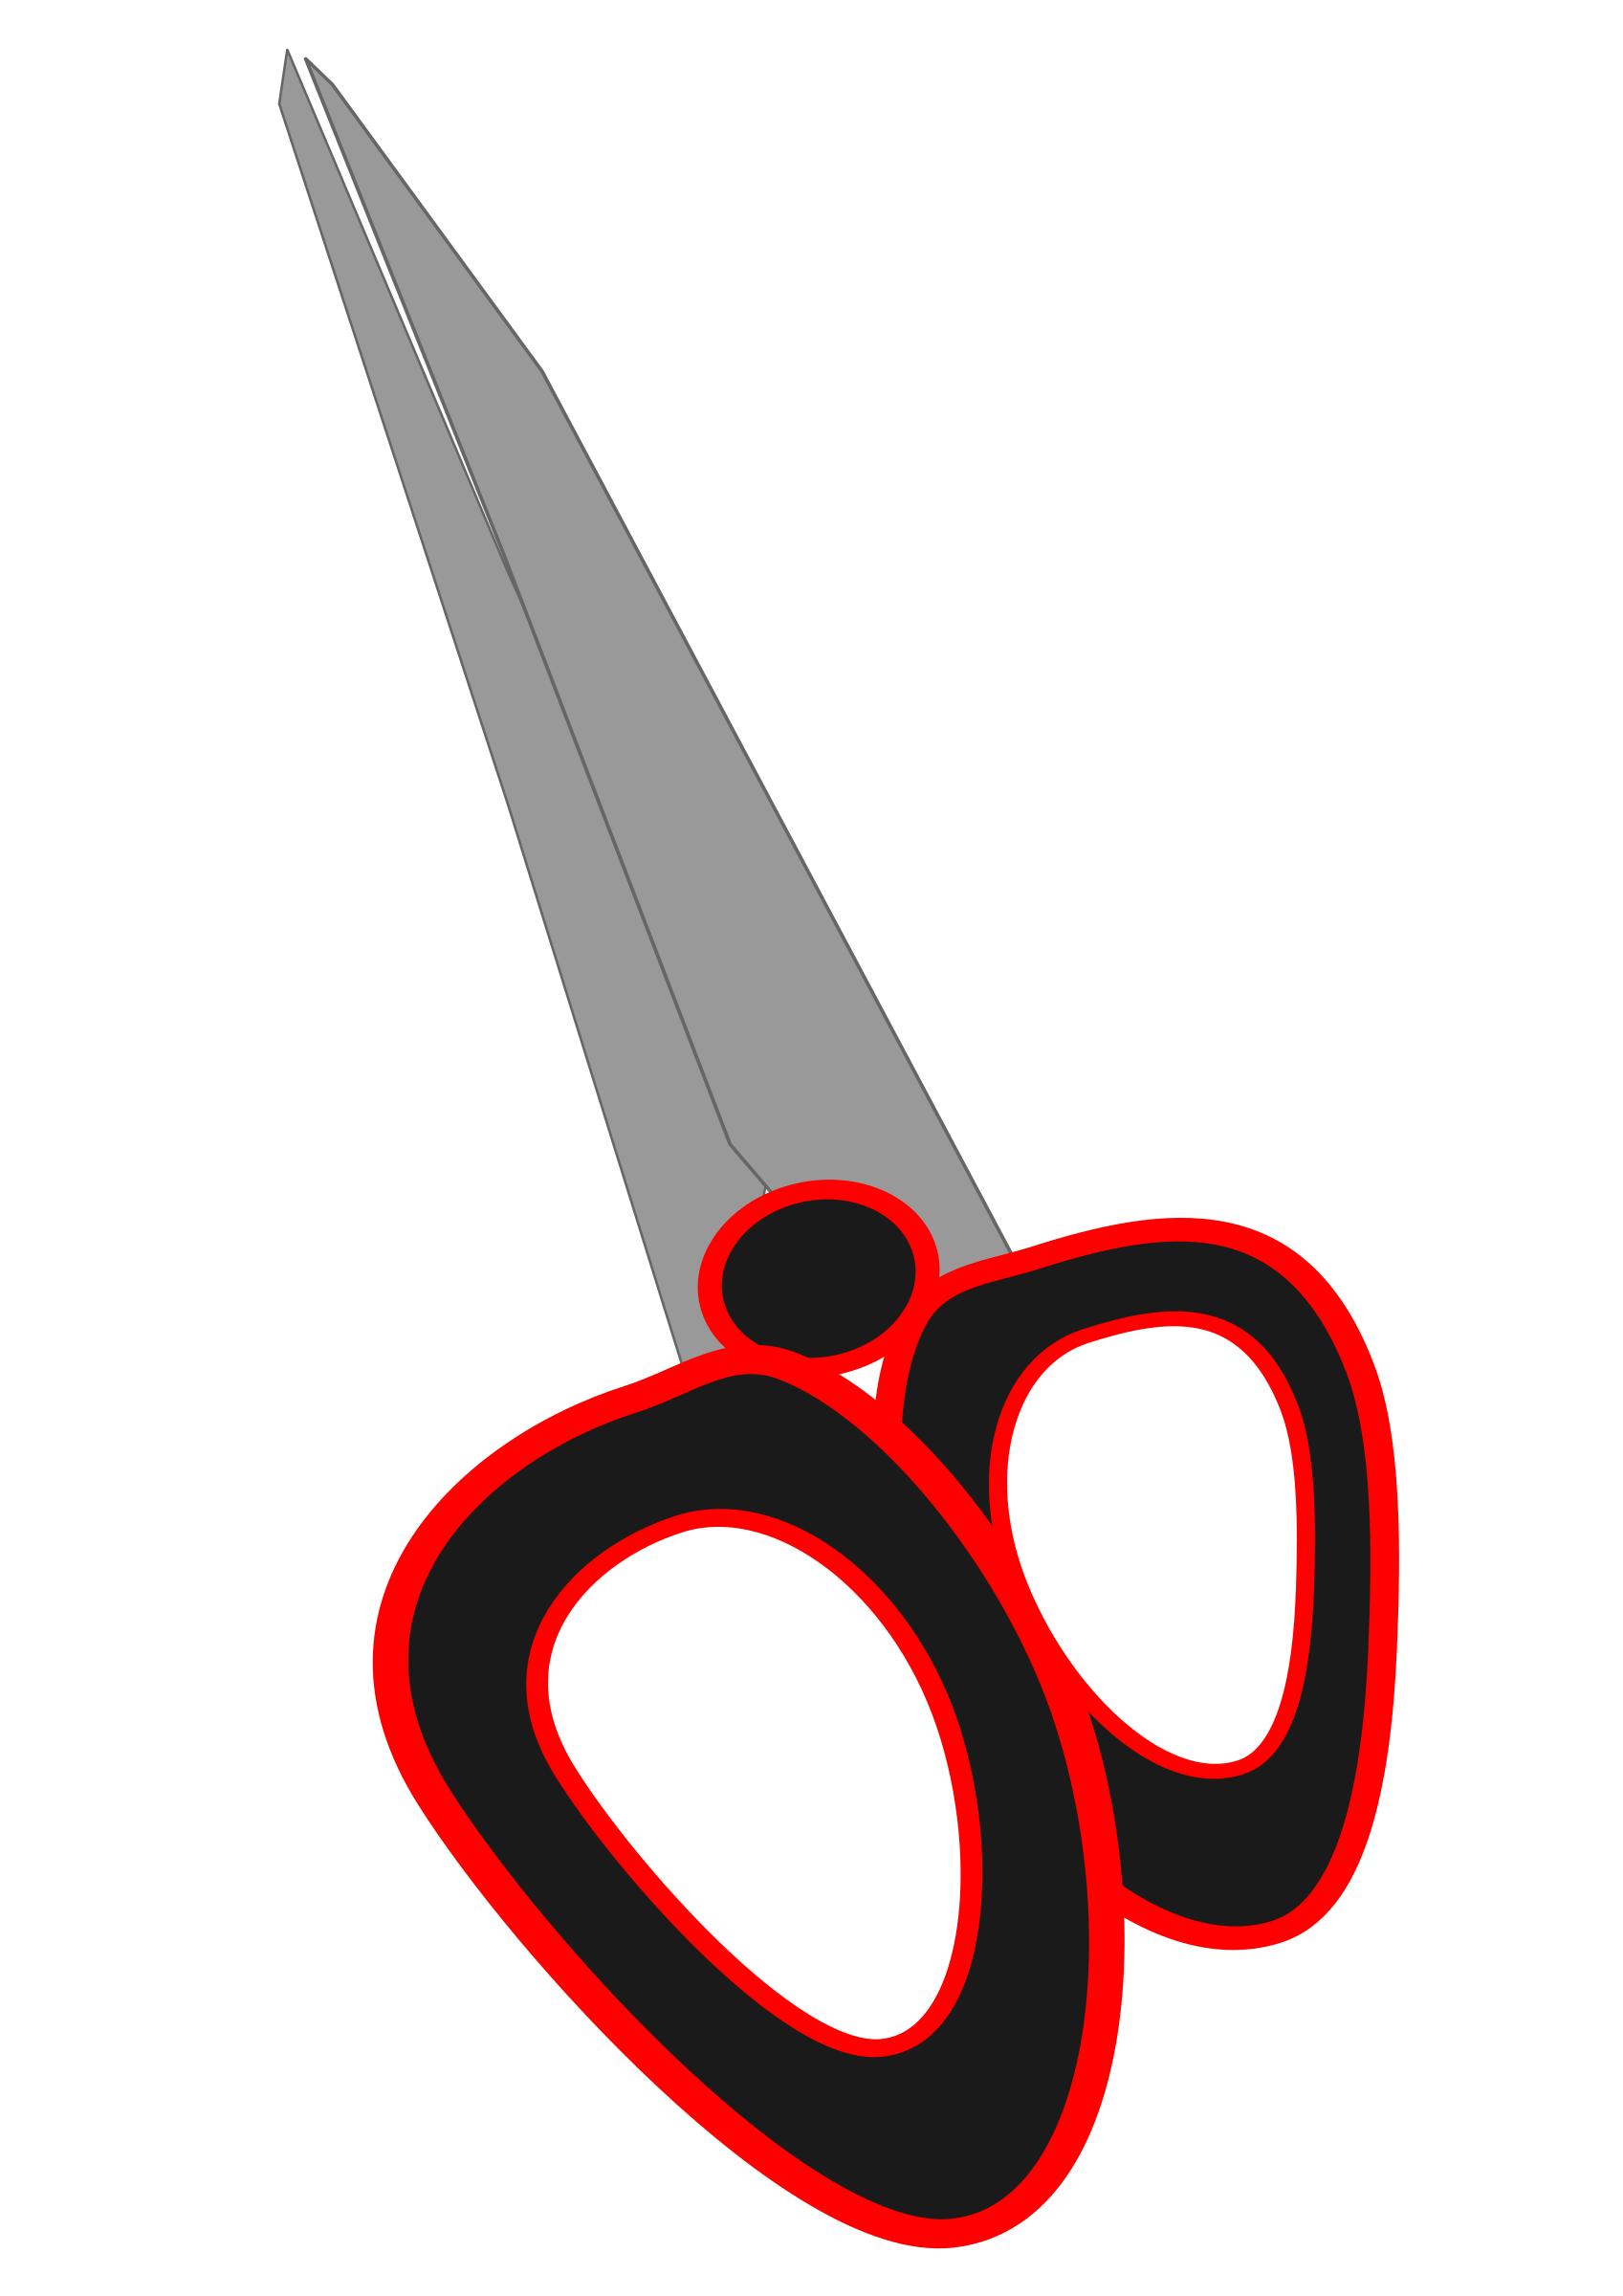 Modern Pair of Swords png